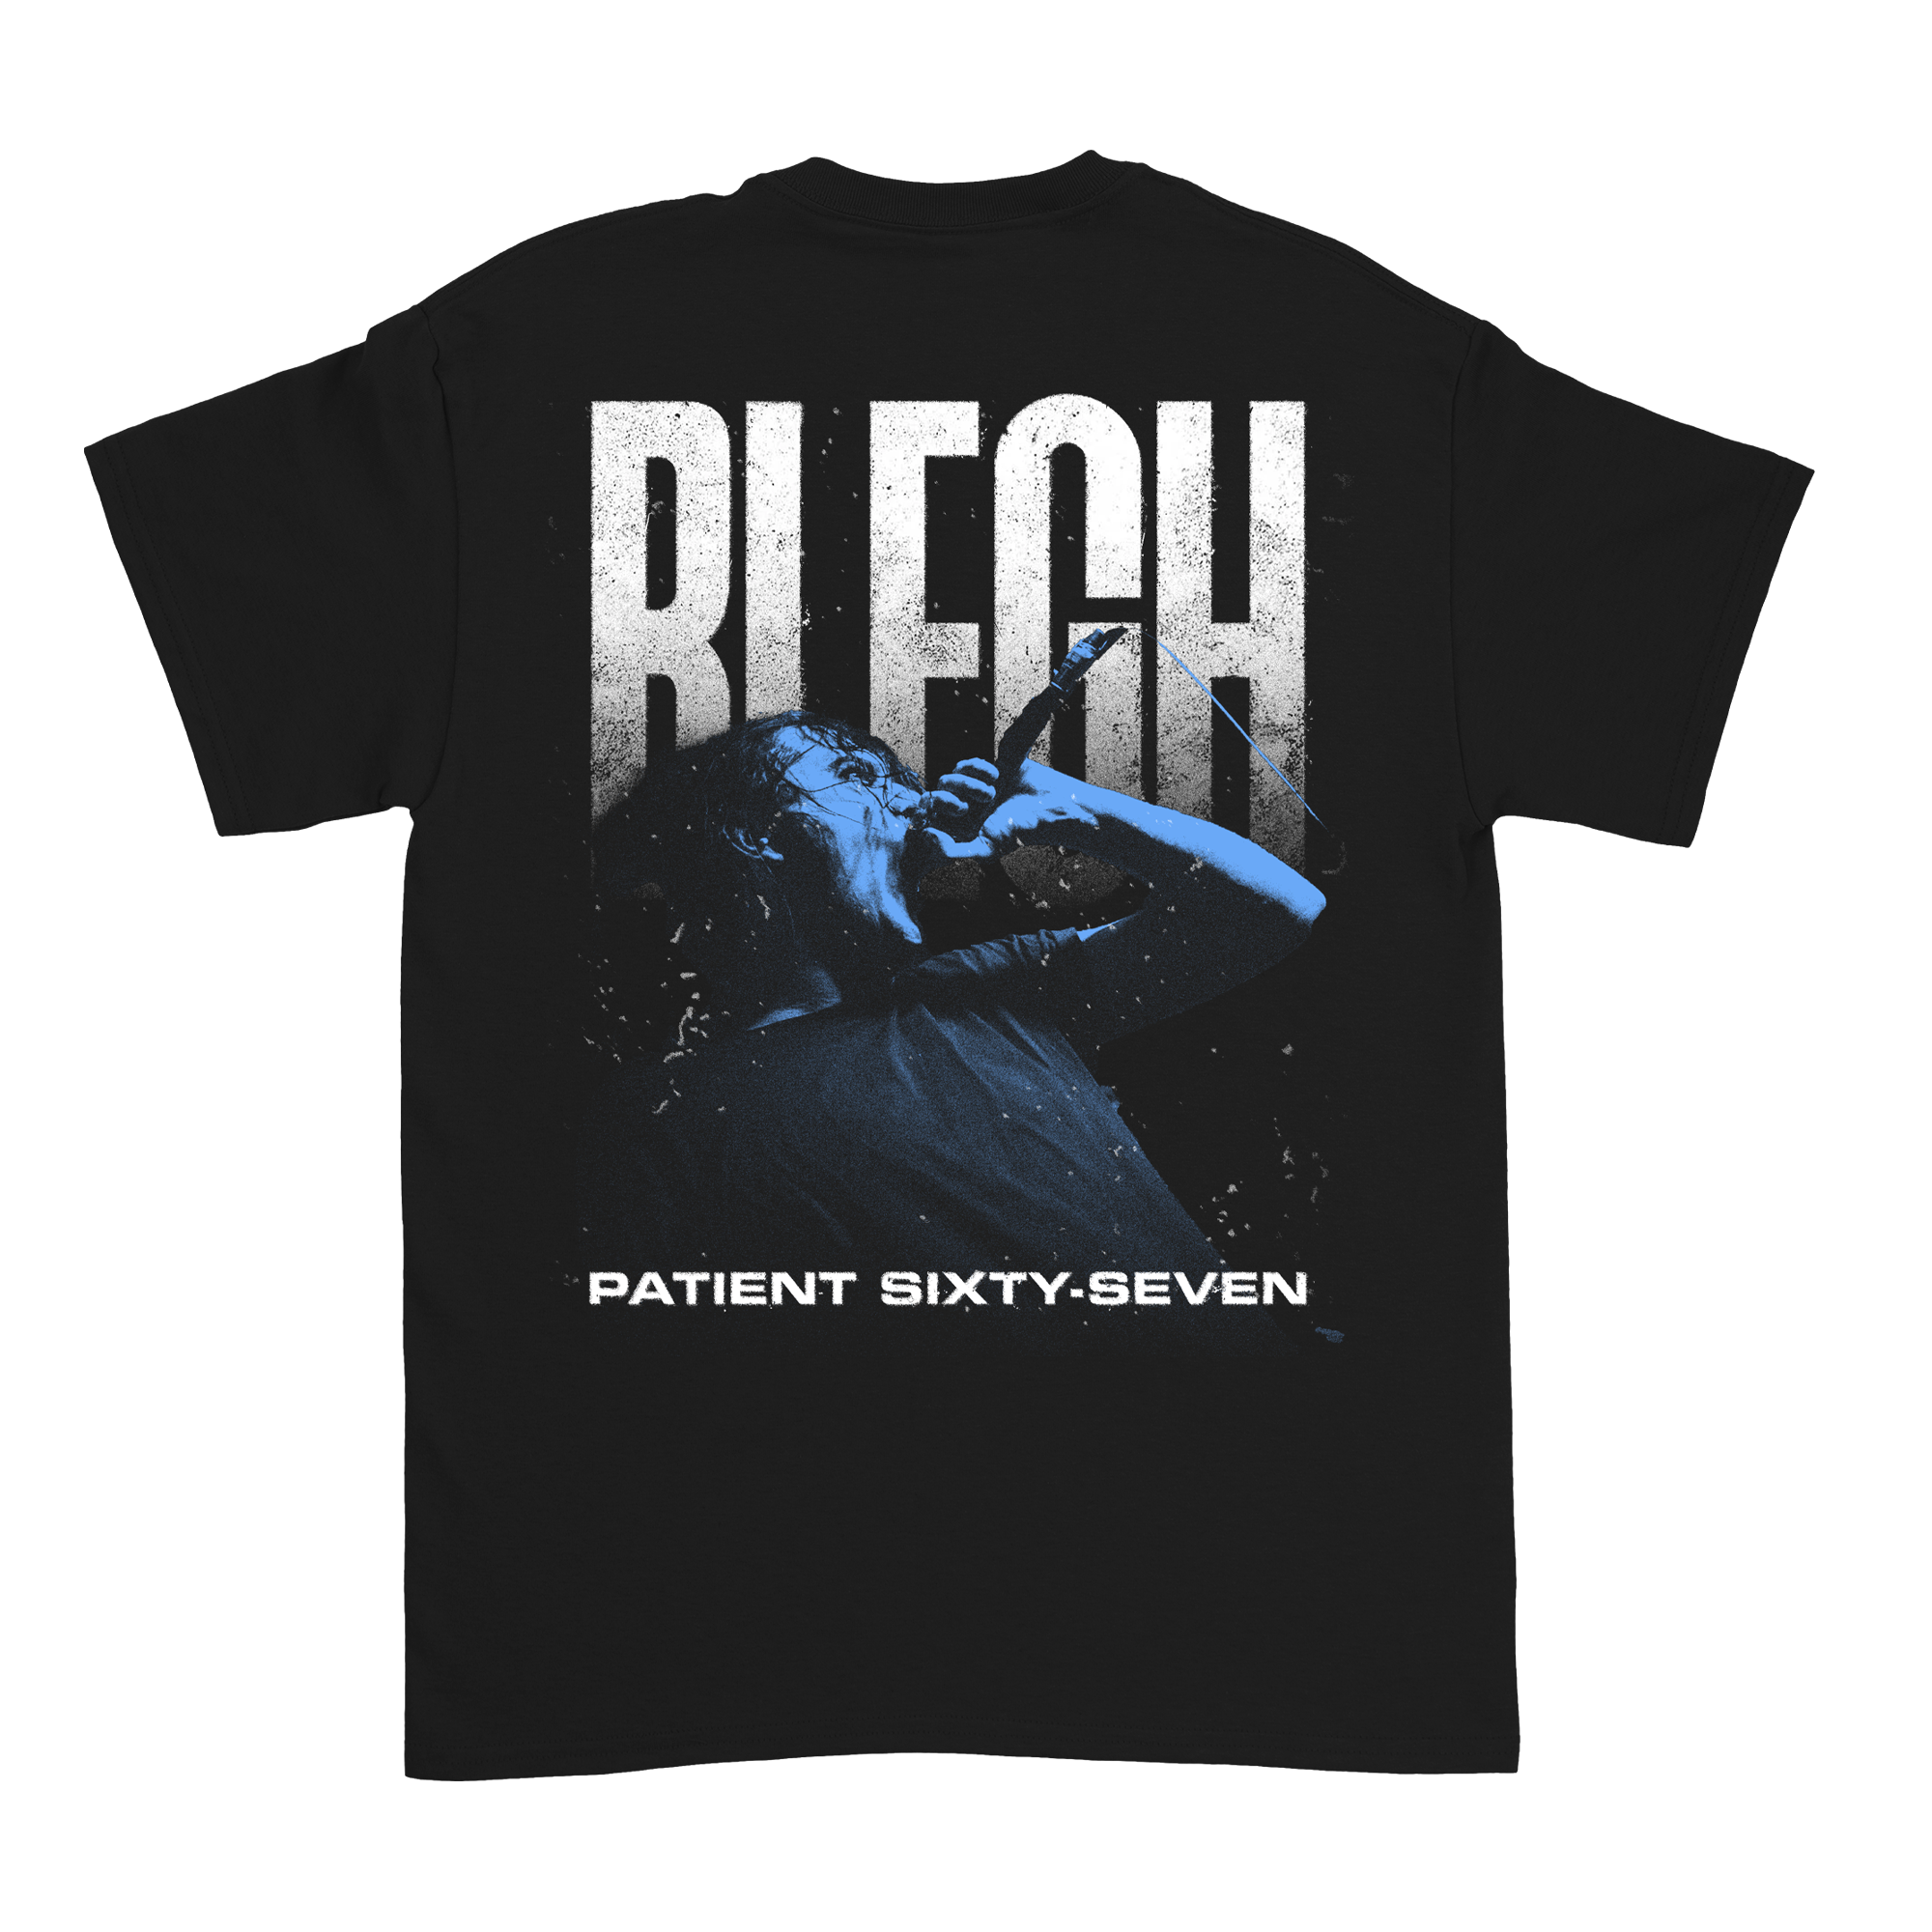 Patient Sixty-Seven - Blegh Crew T-Shirt